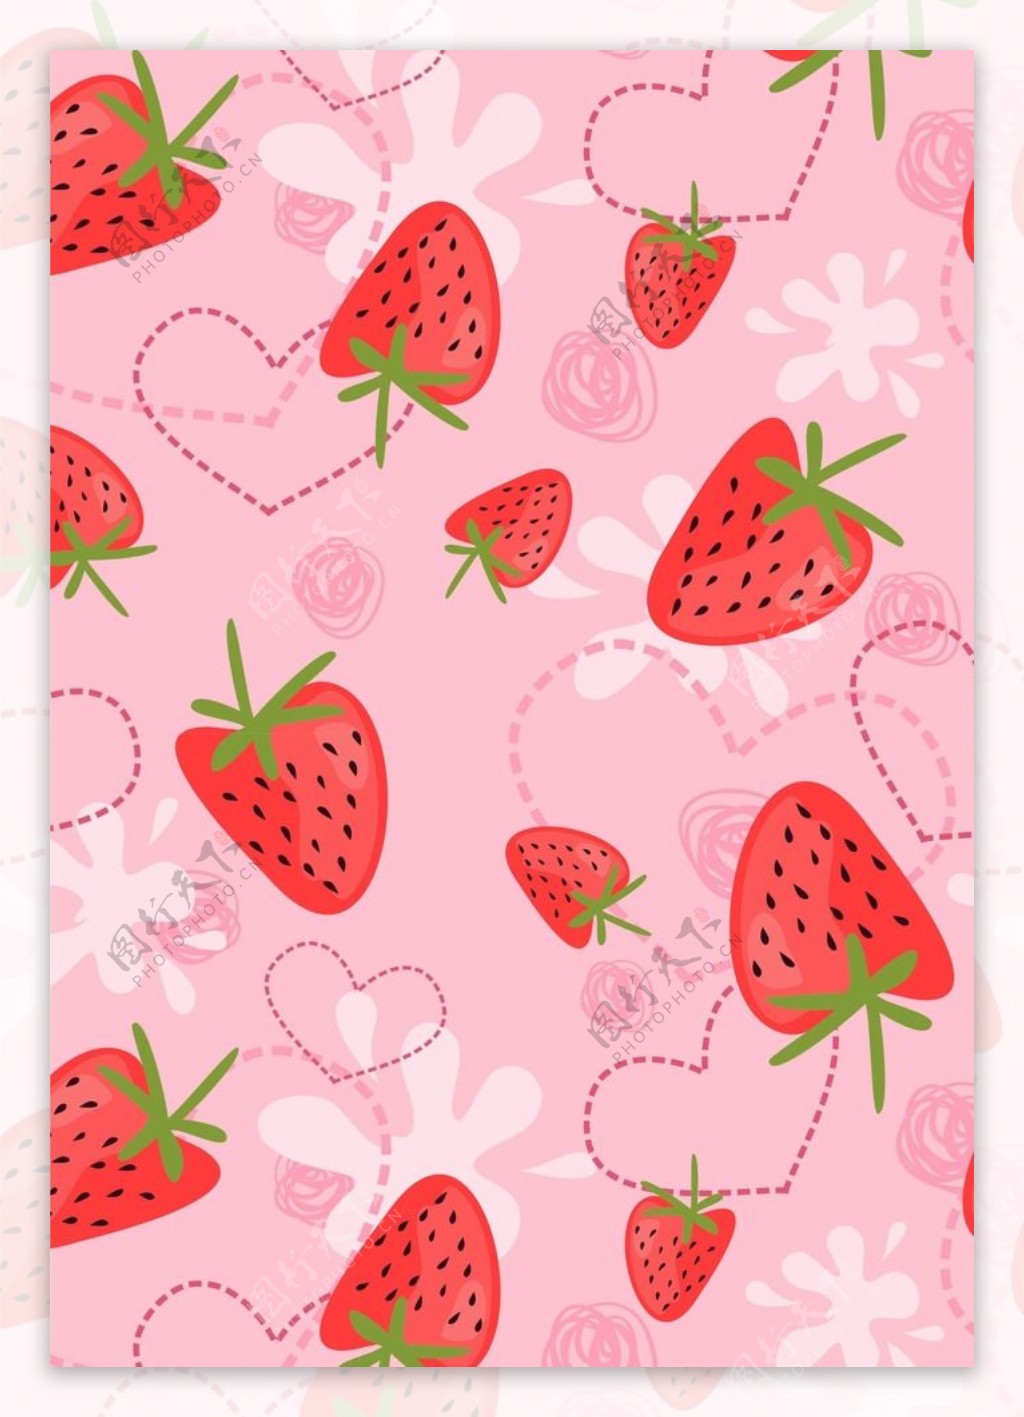 可爱草莓心形背景图